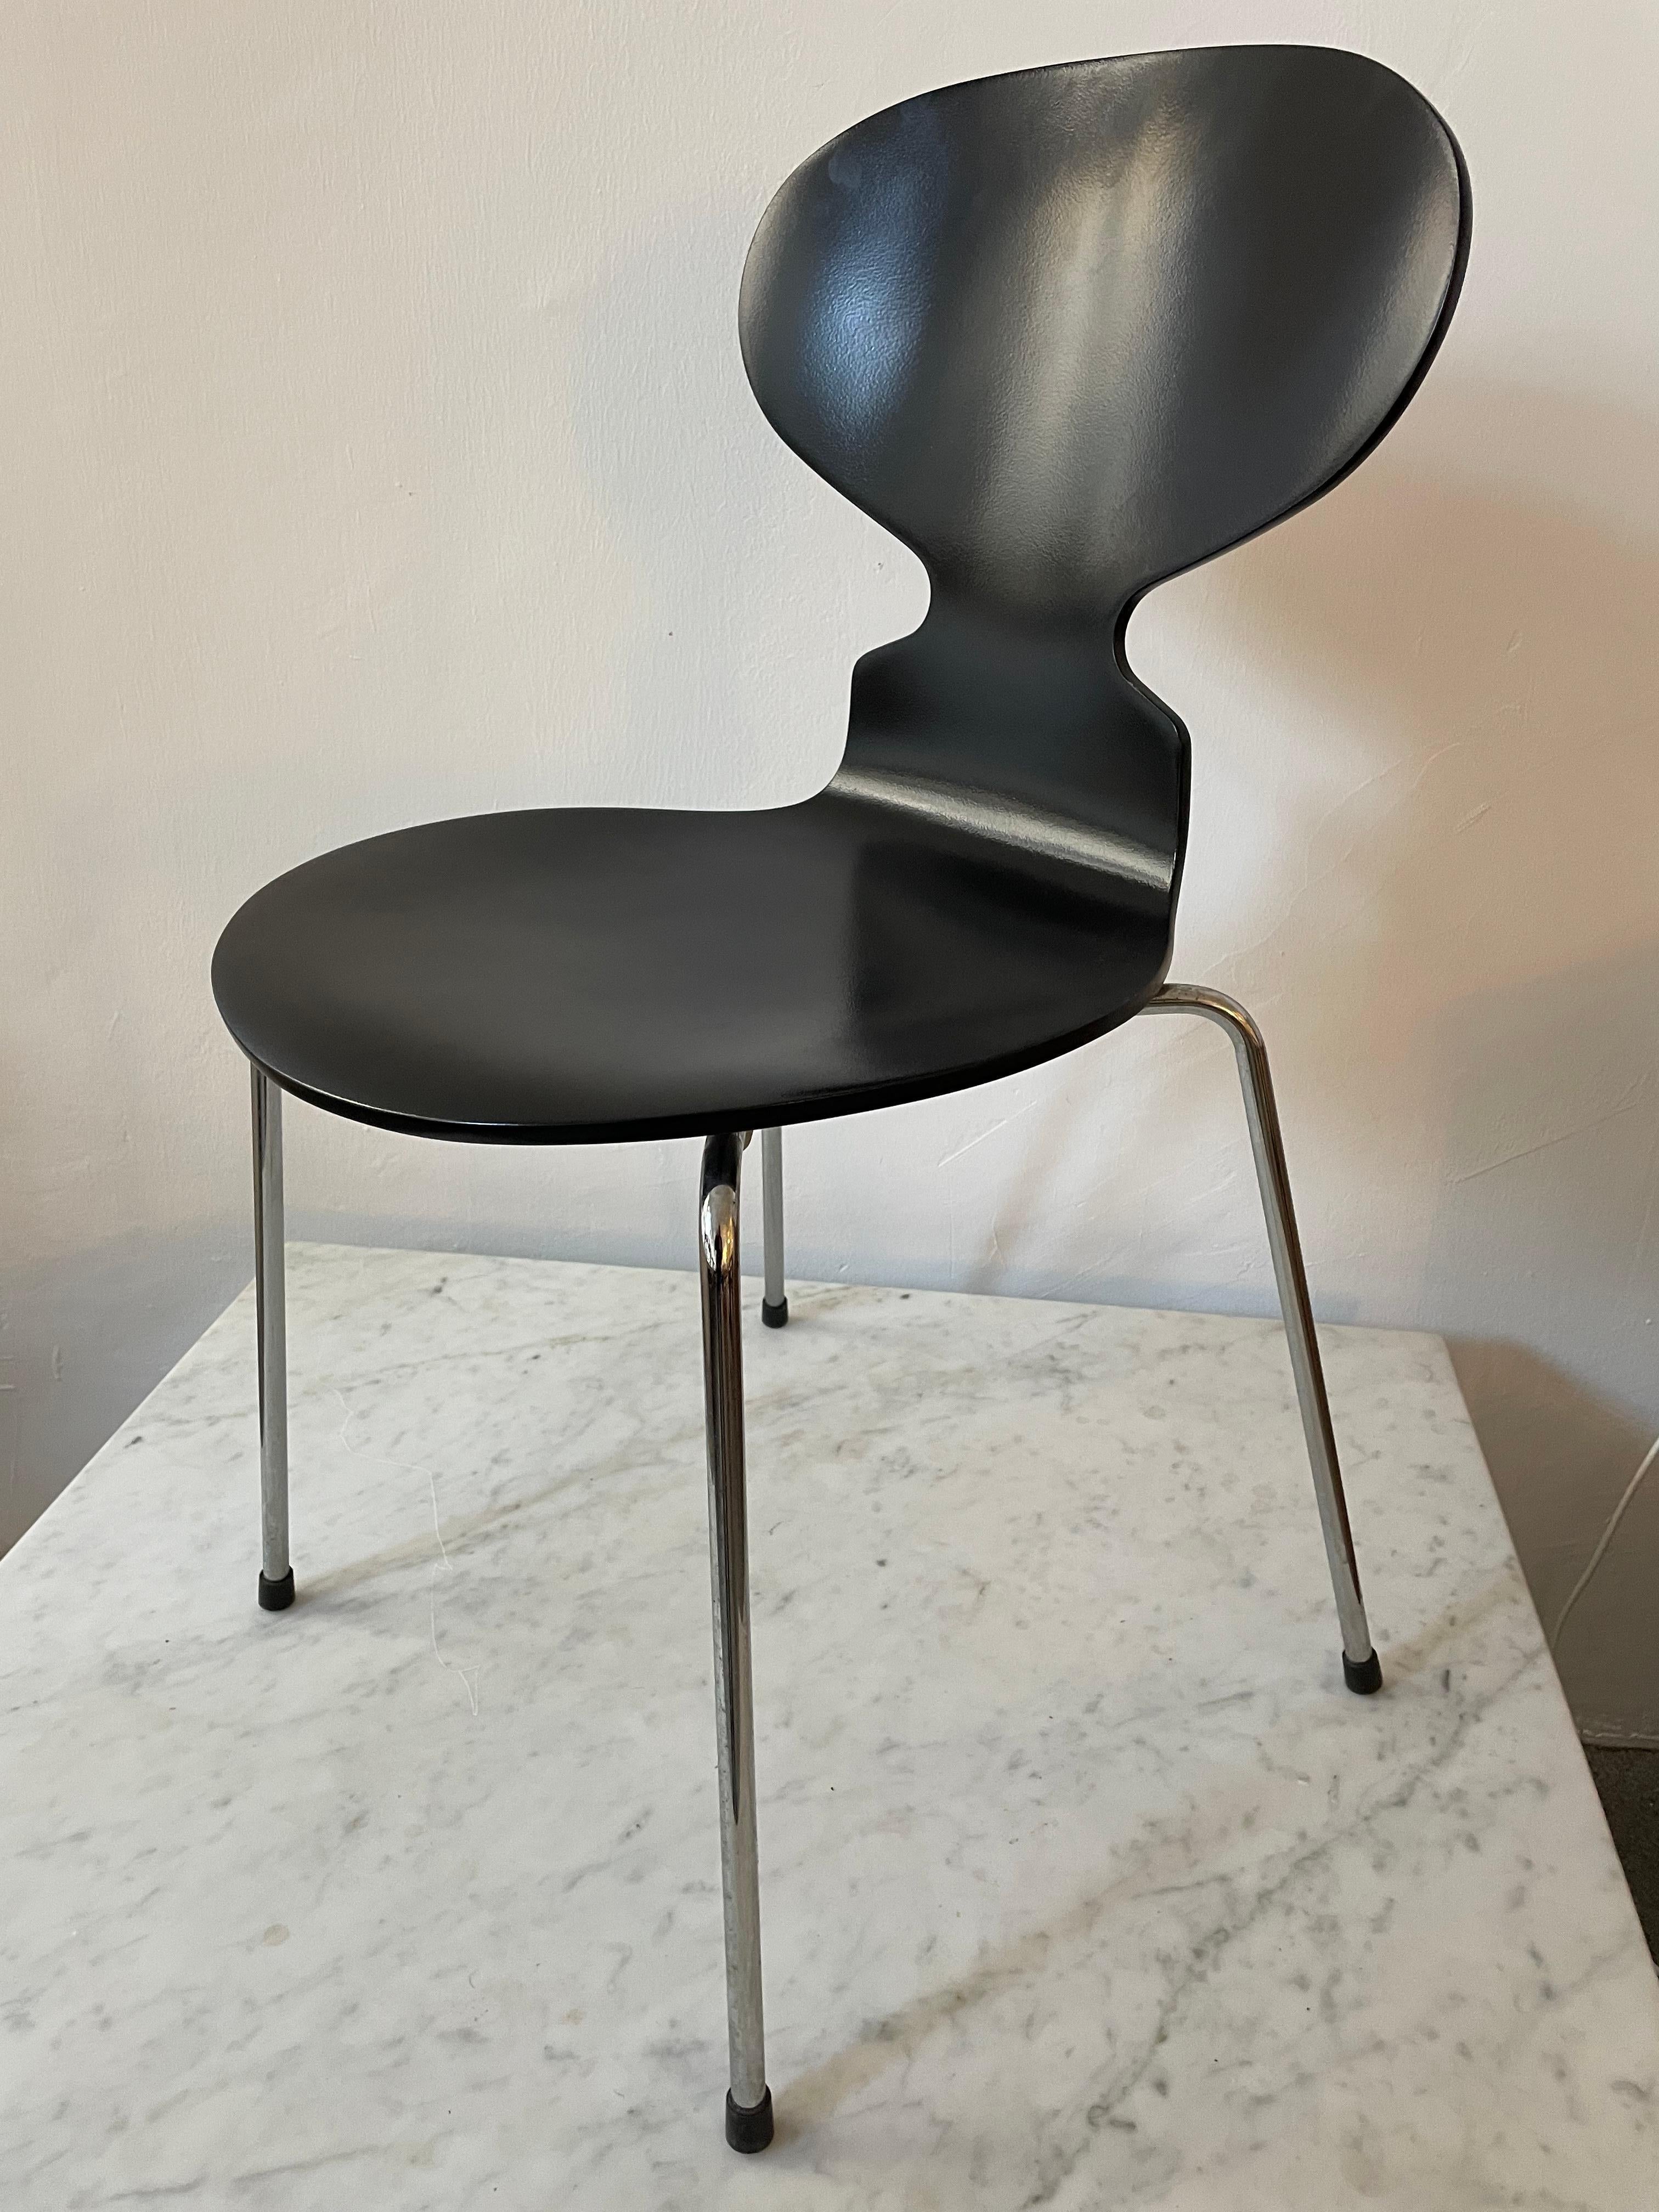 Black Ant Chair by Arne Jacobsen for Fritz Hansen 1